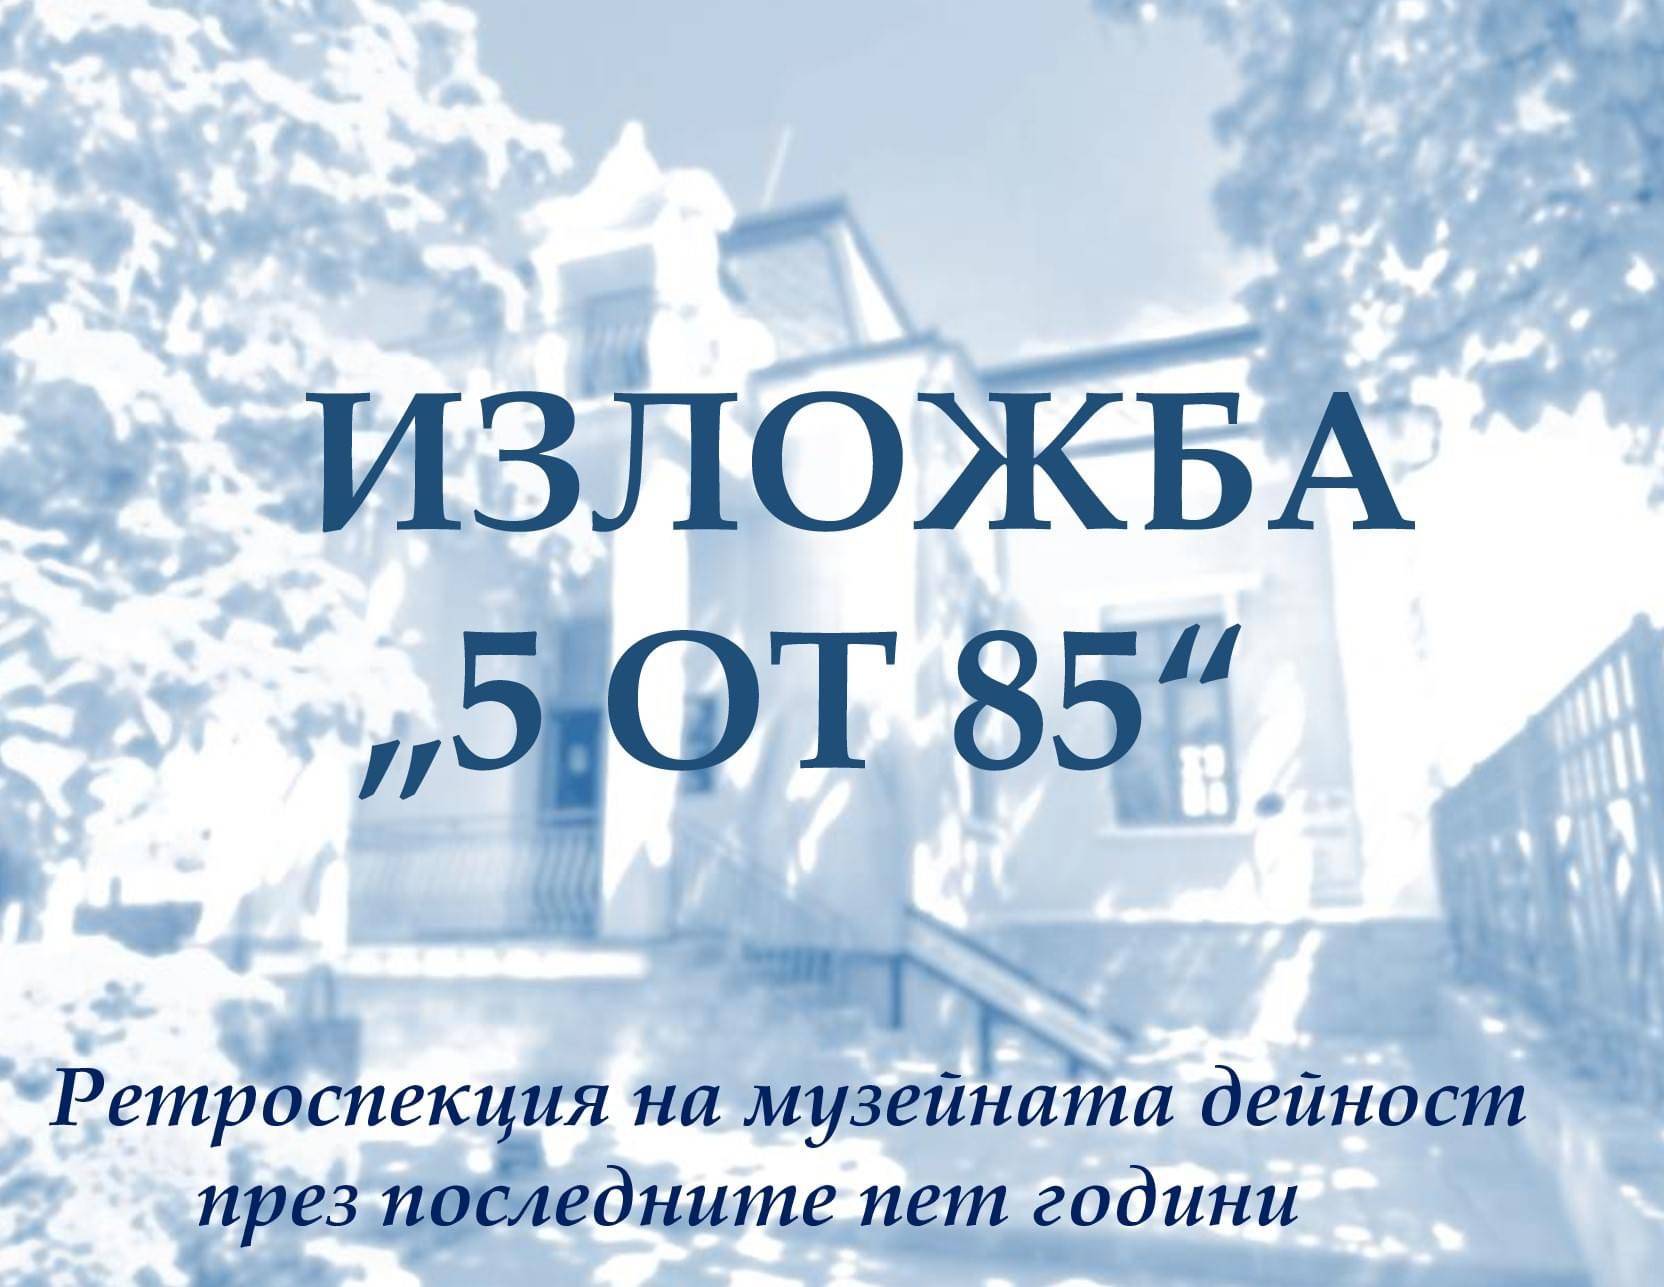 Историческият музей в Оряхово отбелязва 85 години от създаването си